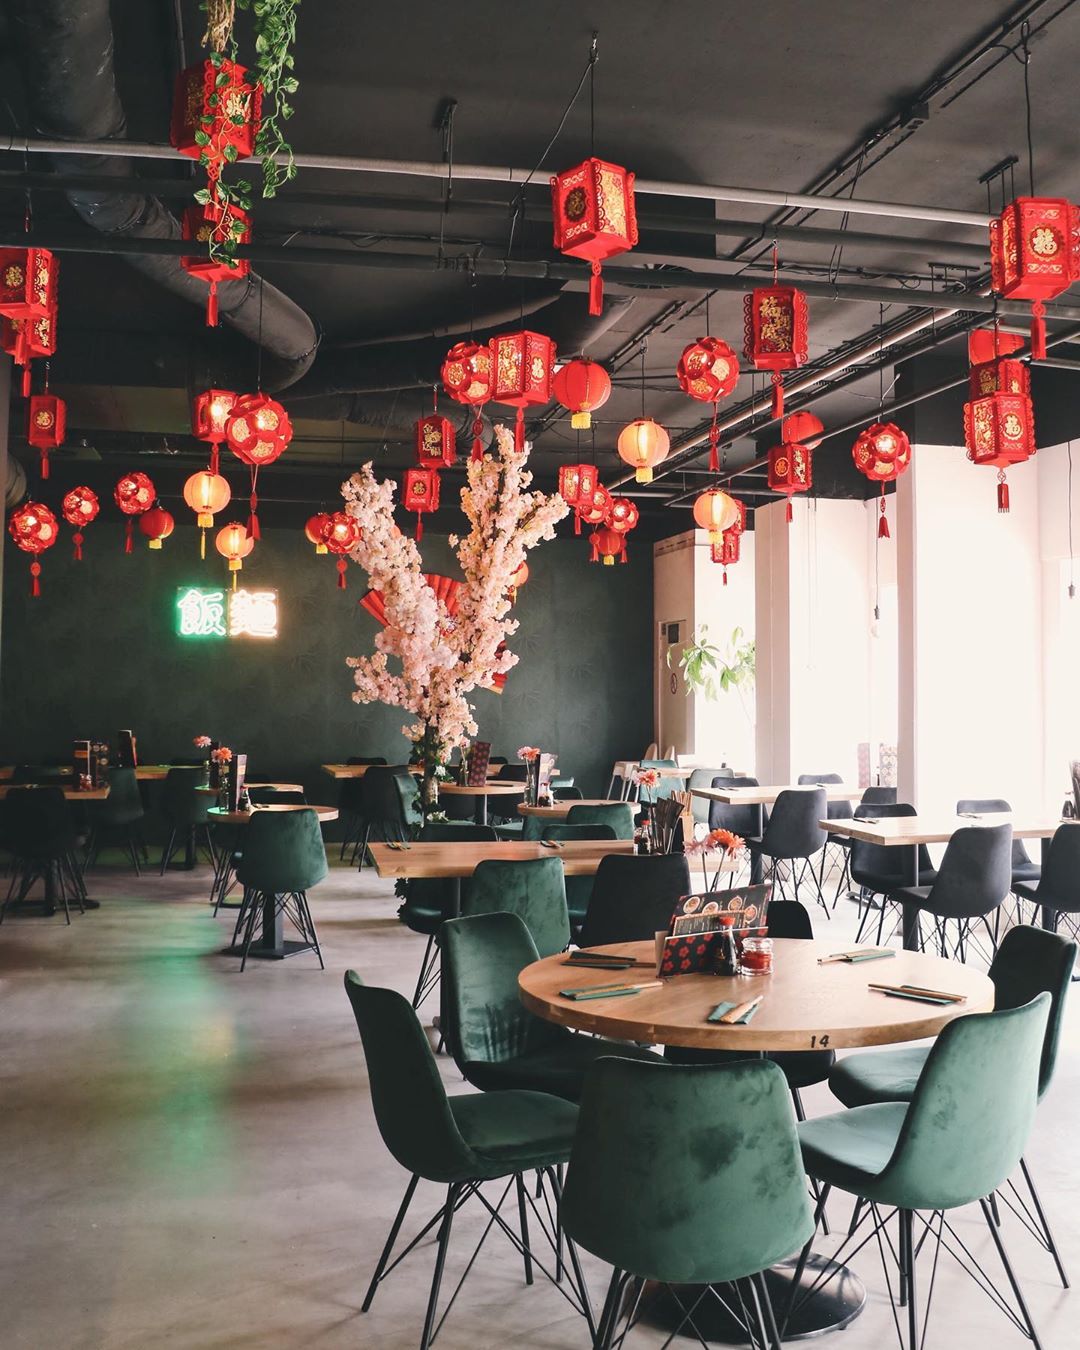 Sfeerimpressie van 1 van de 2 ruimtes in het restaurant! ? . Voorlopig zijn wij elke zondag GESLOTEN. Morgen staan we weer voor jullie klaar van 12:00-22:00uur. ?
.
.
.
.
.
.
#XuNoodleBar #Tilburg #Tillie #Noodles #Asian #Chinese #Food #Homemade #Hotspot #FollowUs #SendNoods